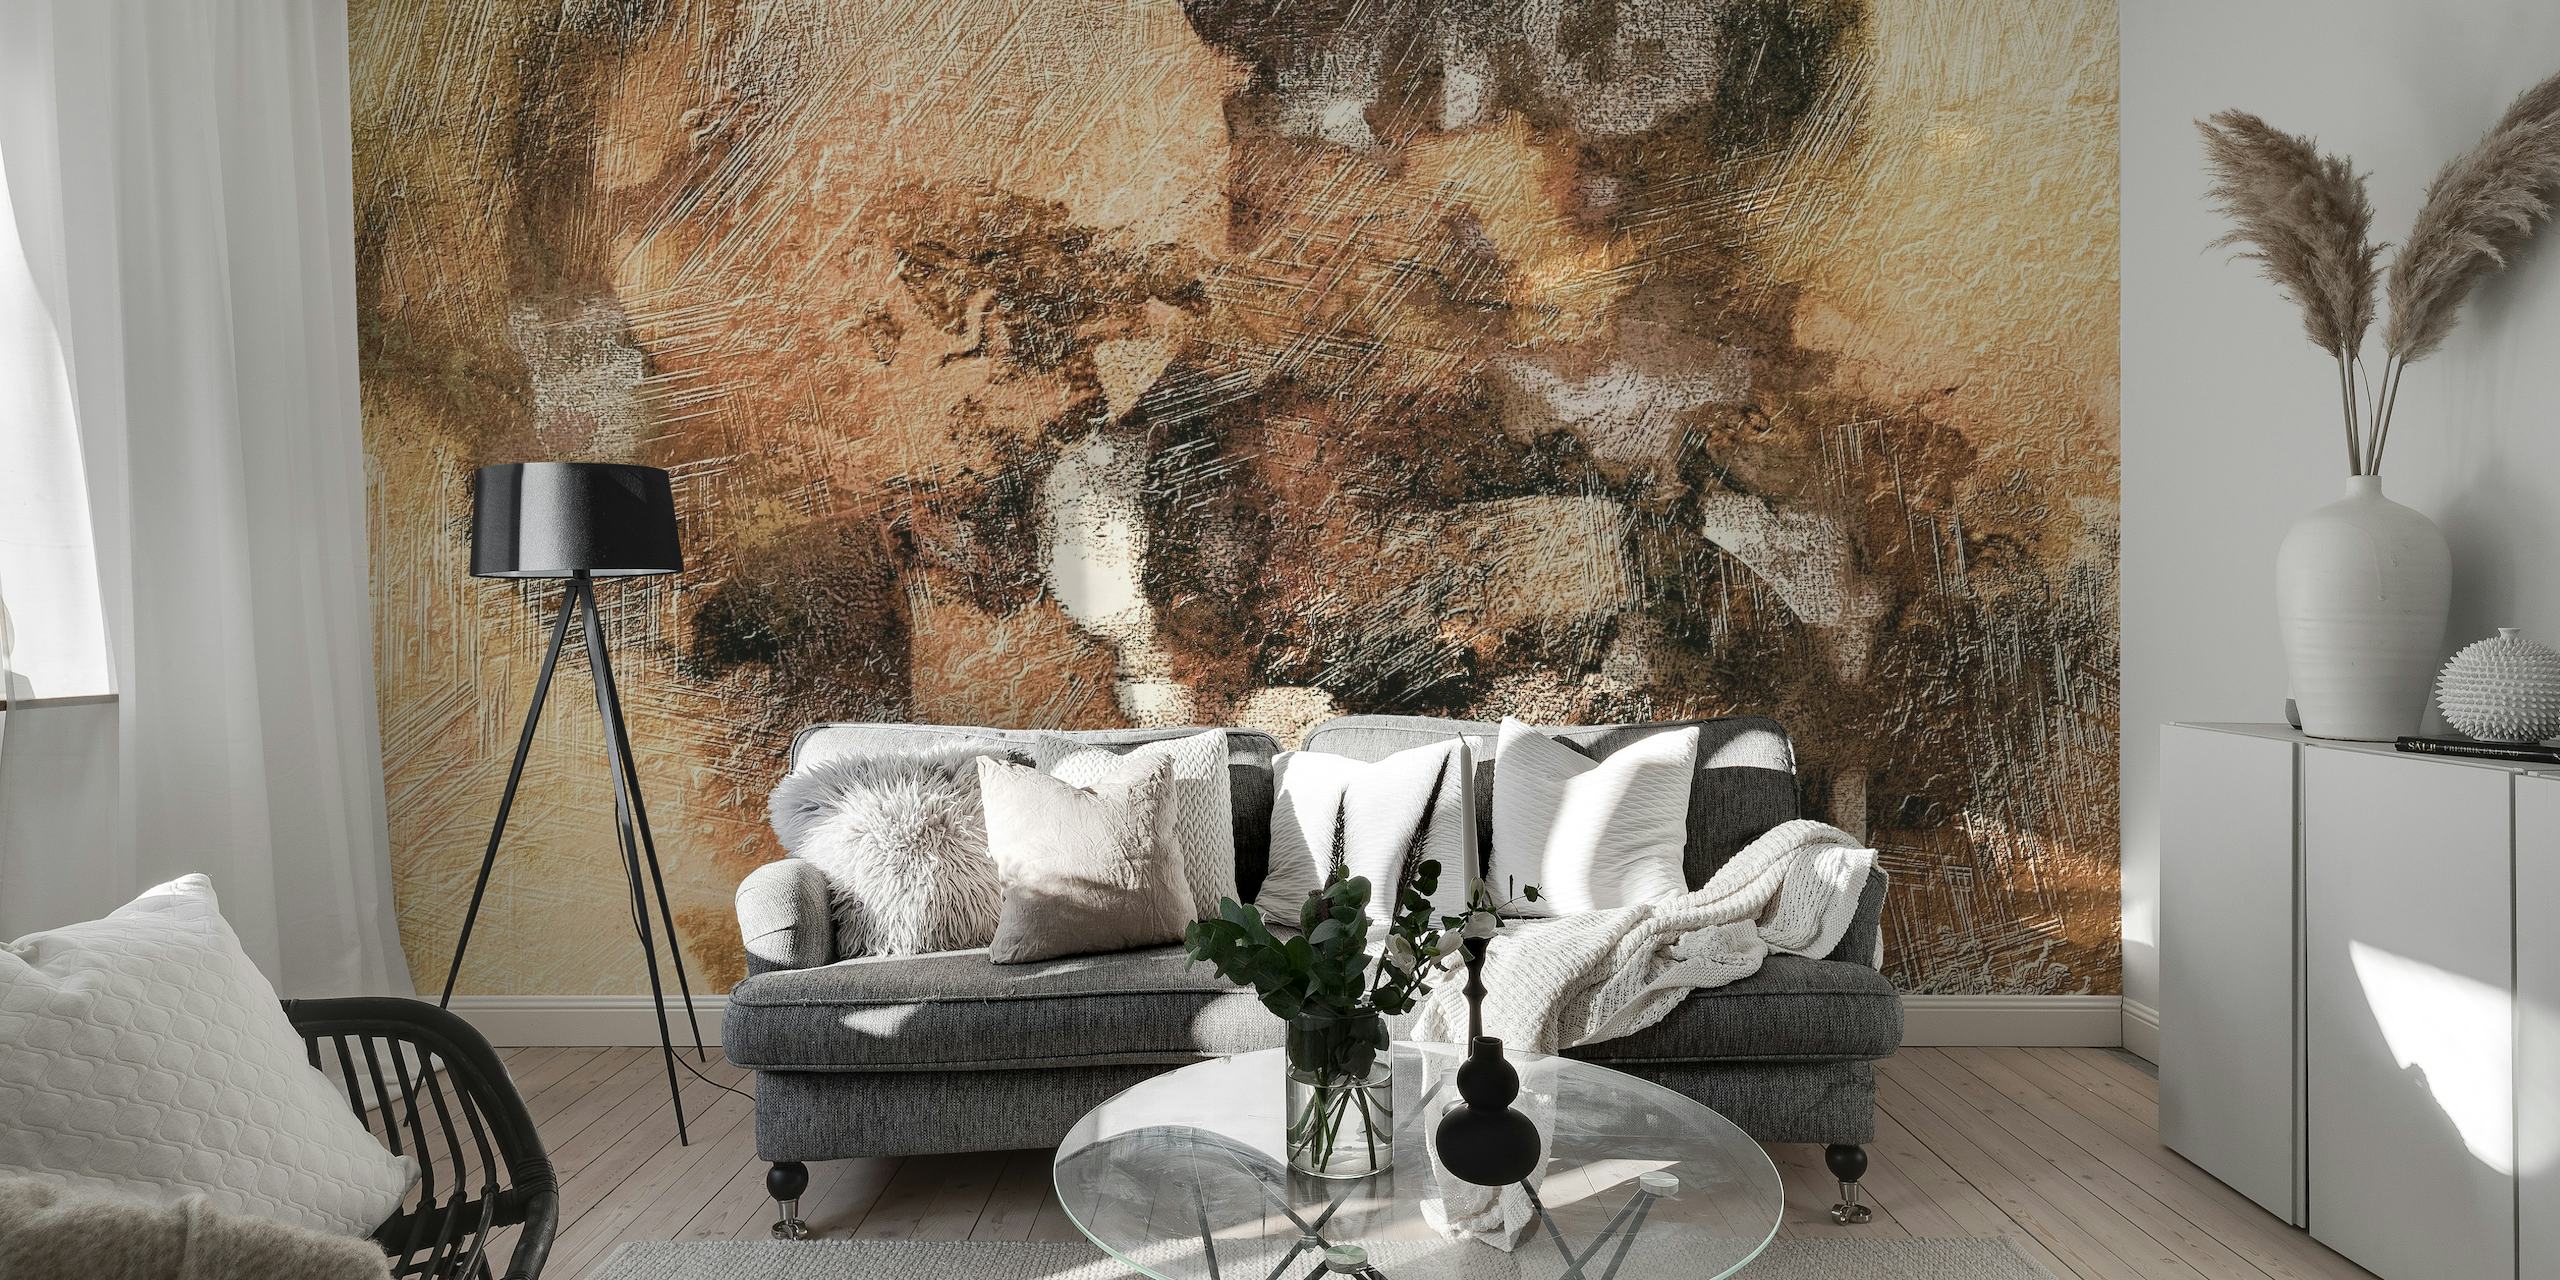 Mural de pared Warm Metal Abstract con tonos terrosos y metálicos en un diseño textural